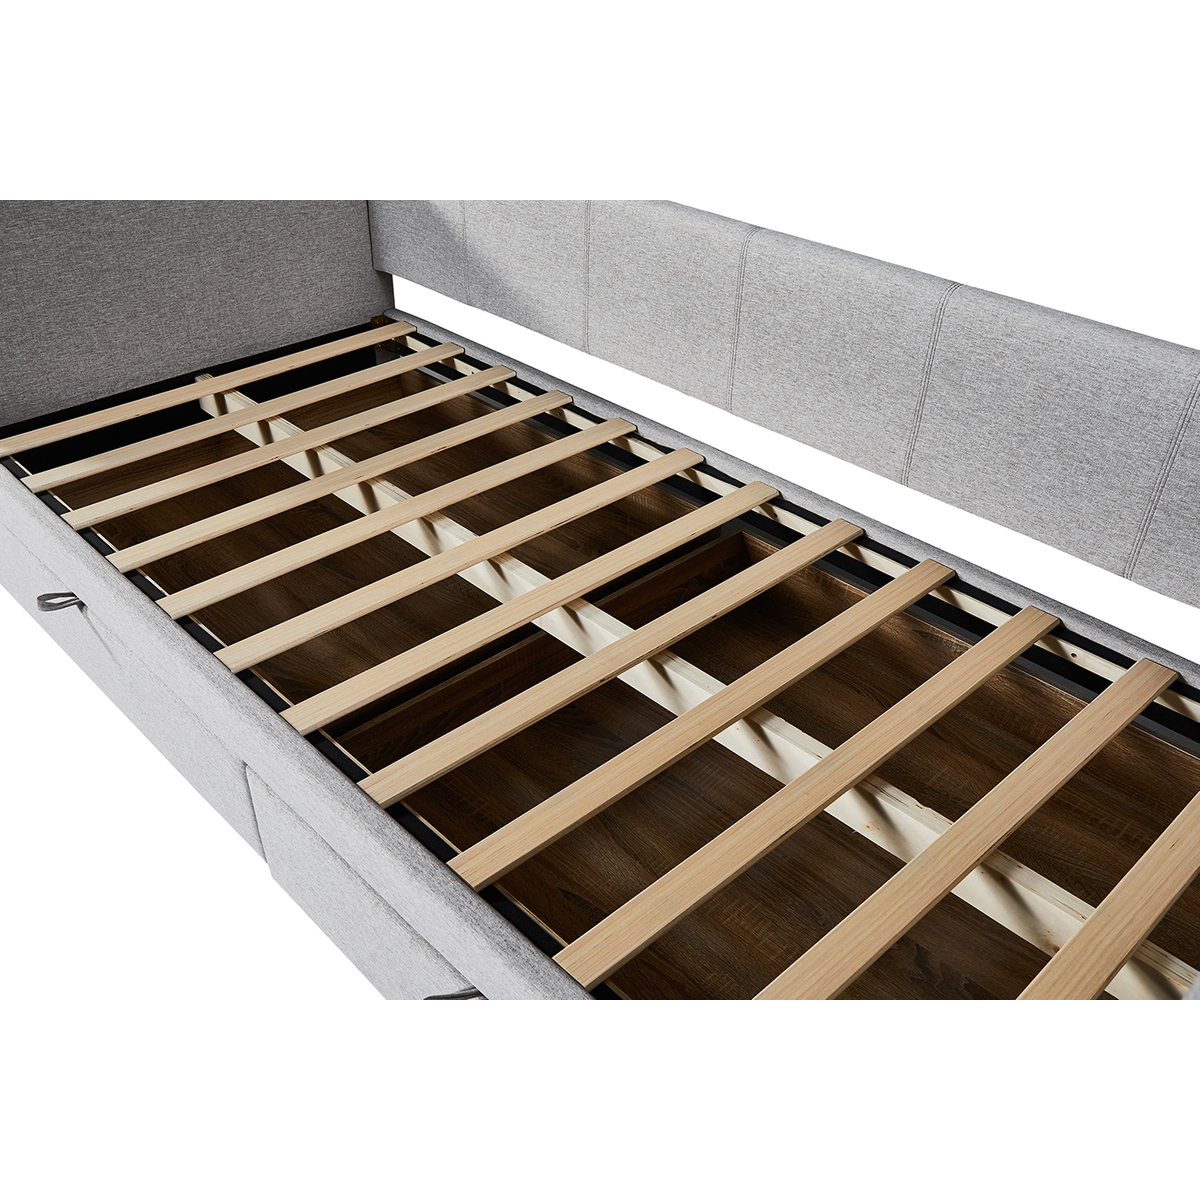  Interiax Liam Bed - Comfort Beige Inclusief 2 schuiven en lattenbodem (90 x 200 cm) 